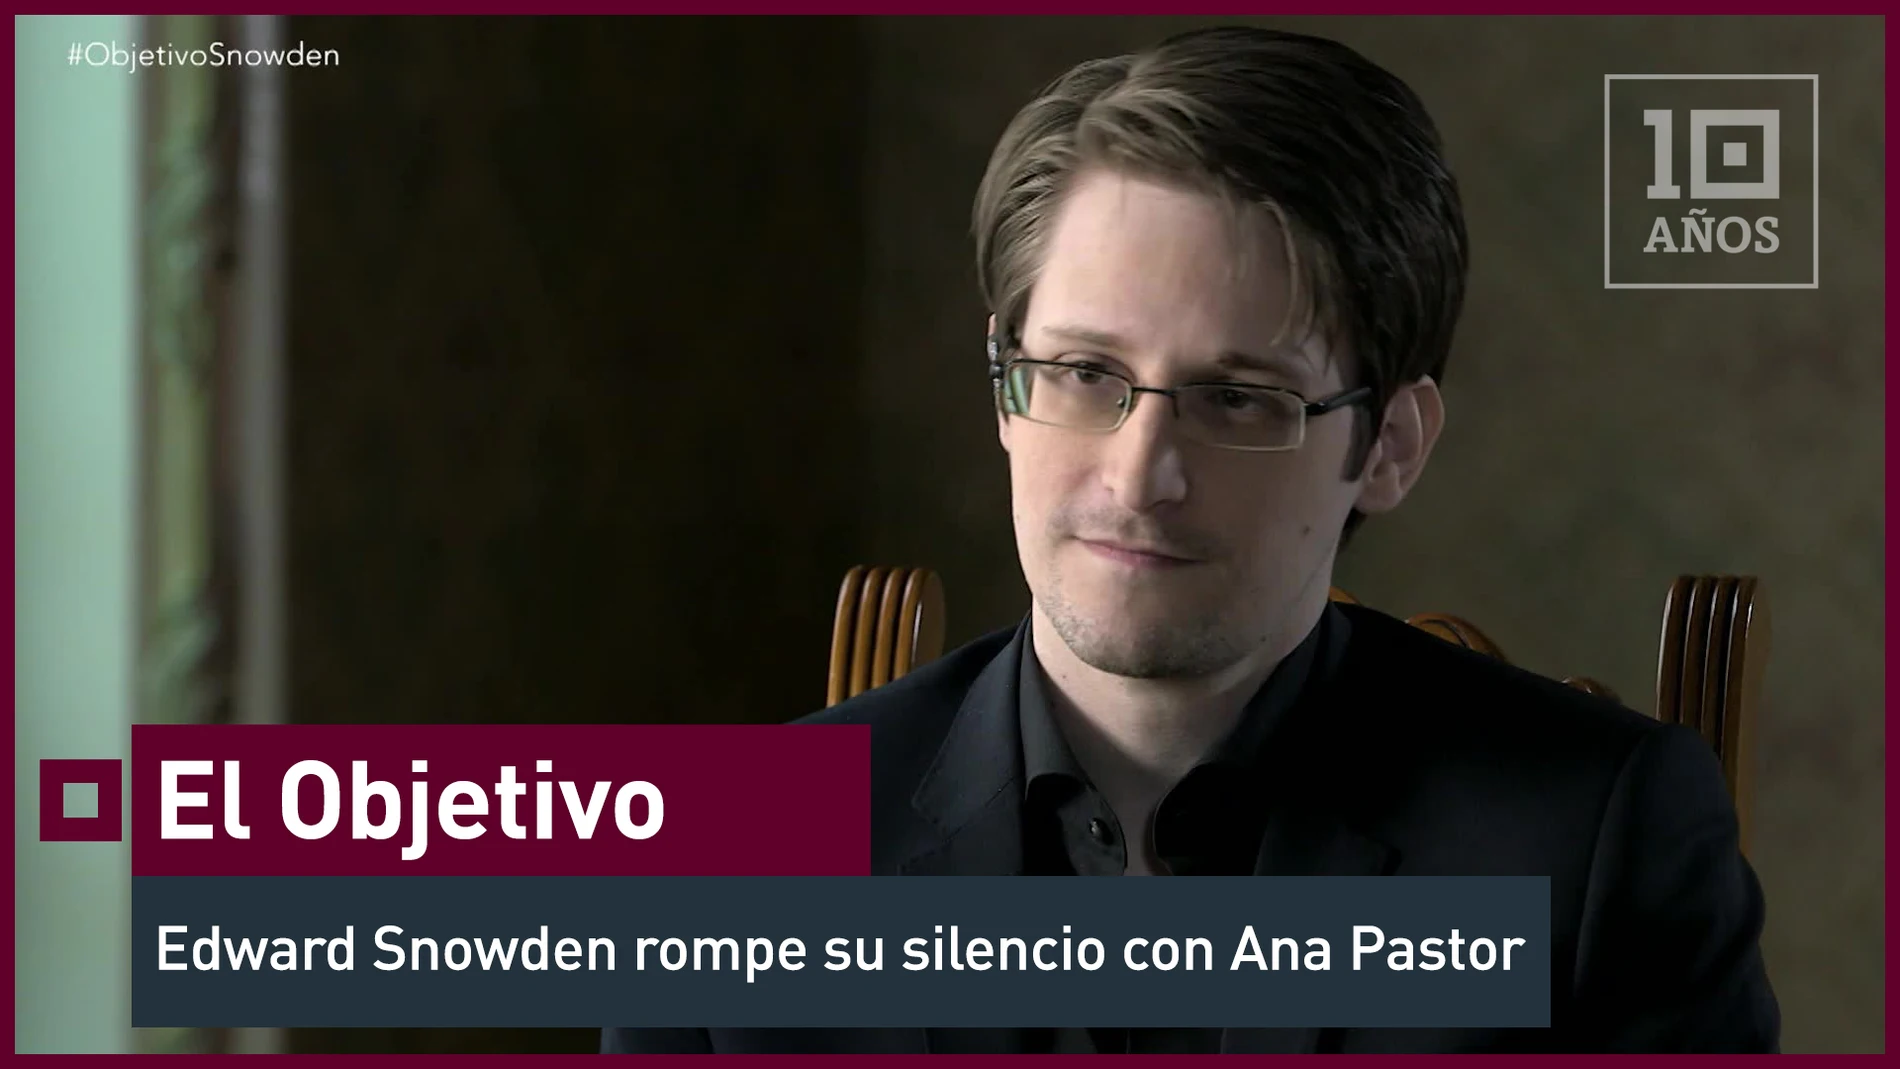 Edward Snowden rompe su silencio con Ana Pastor